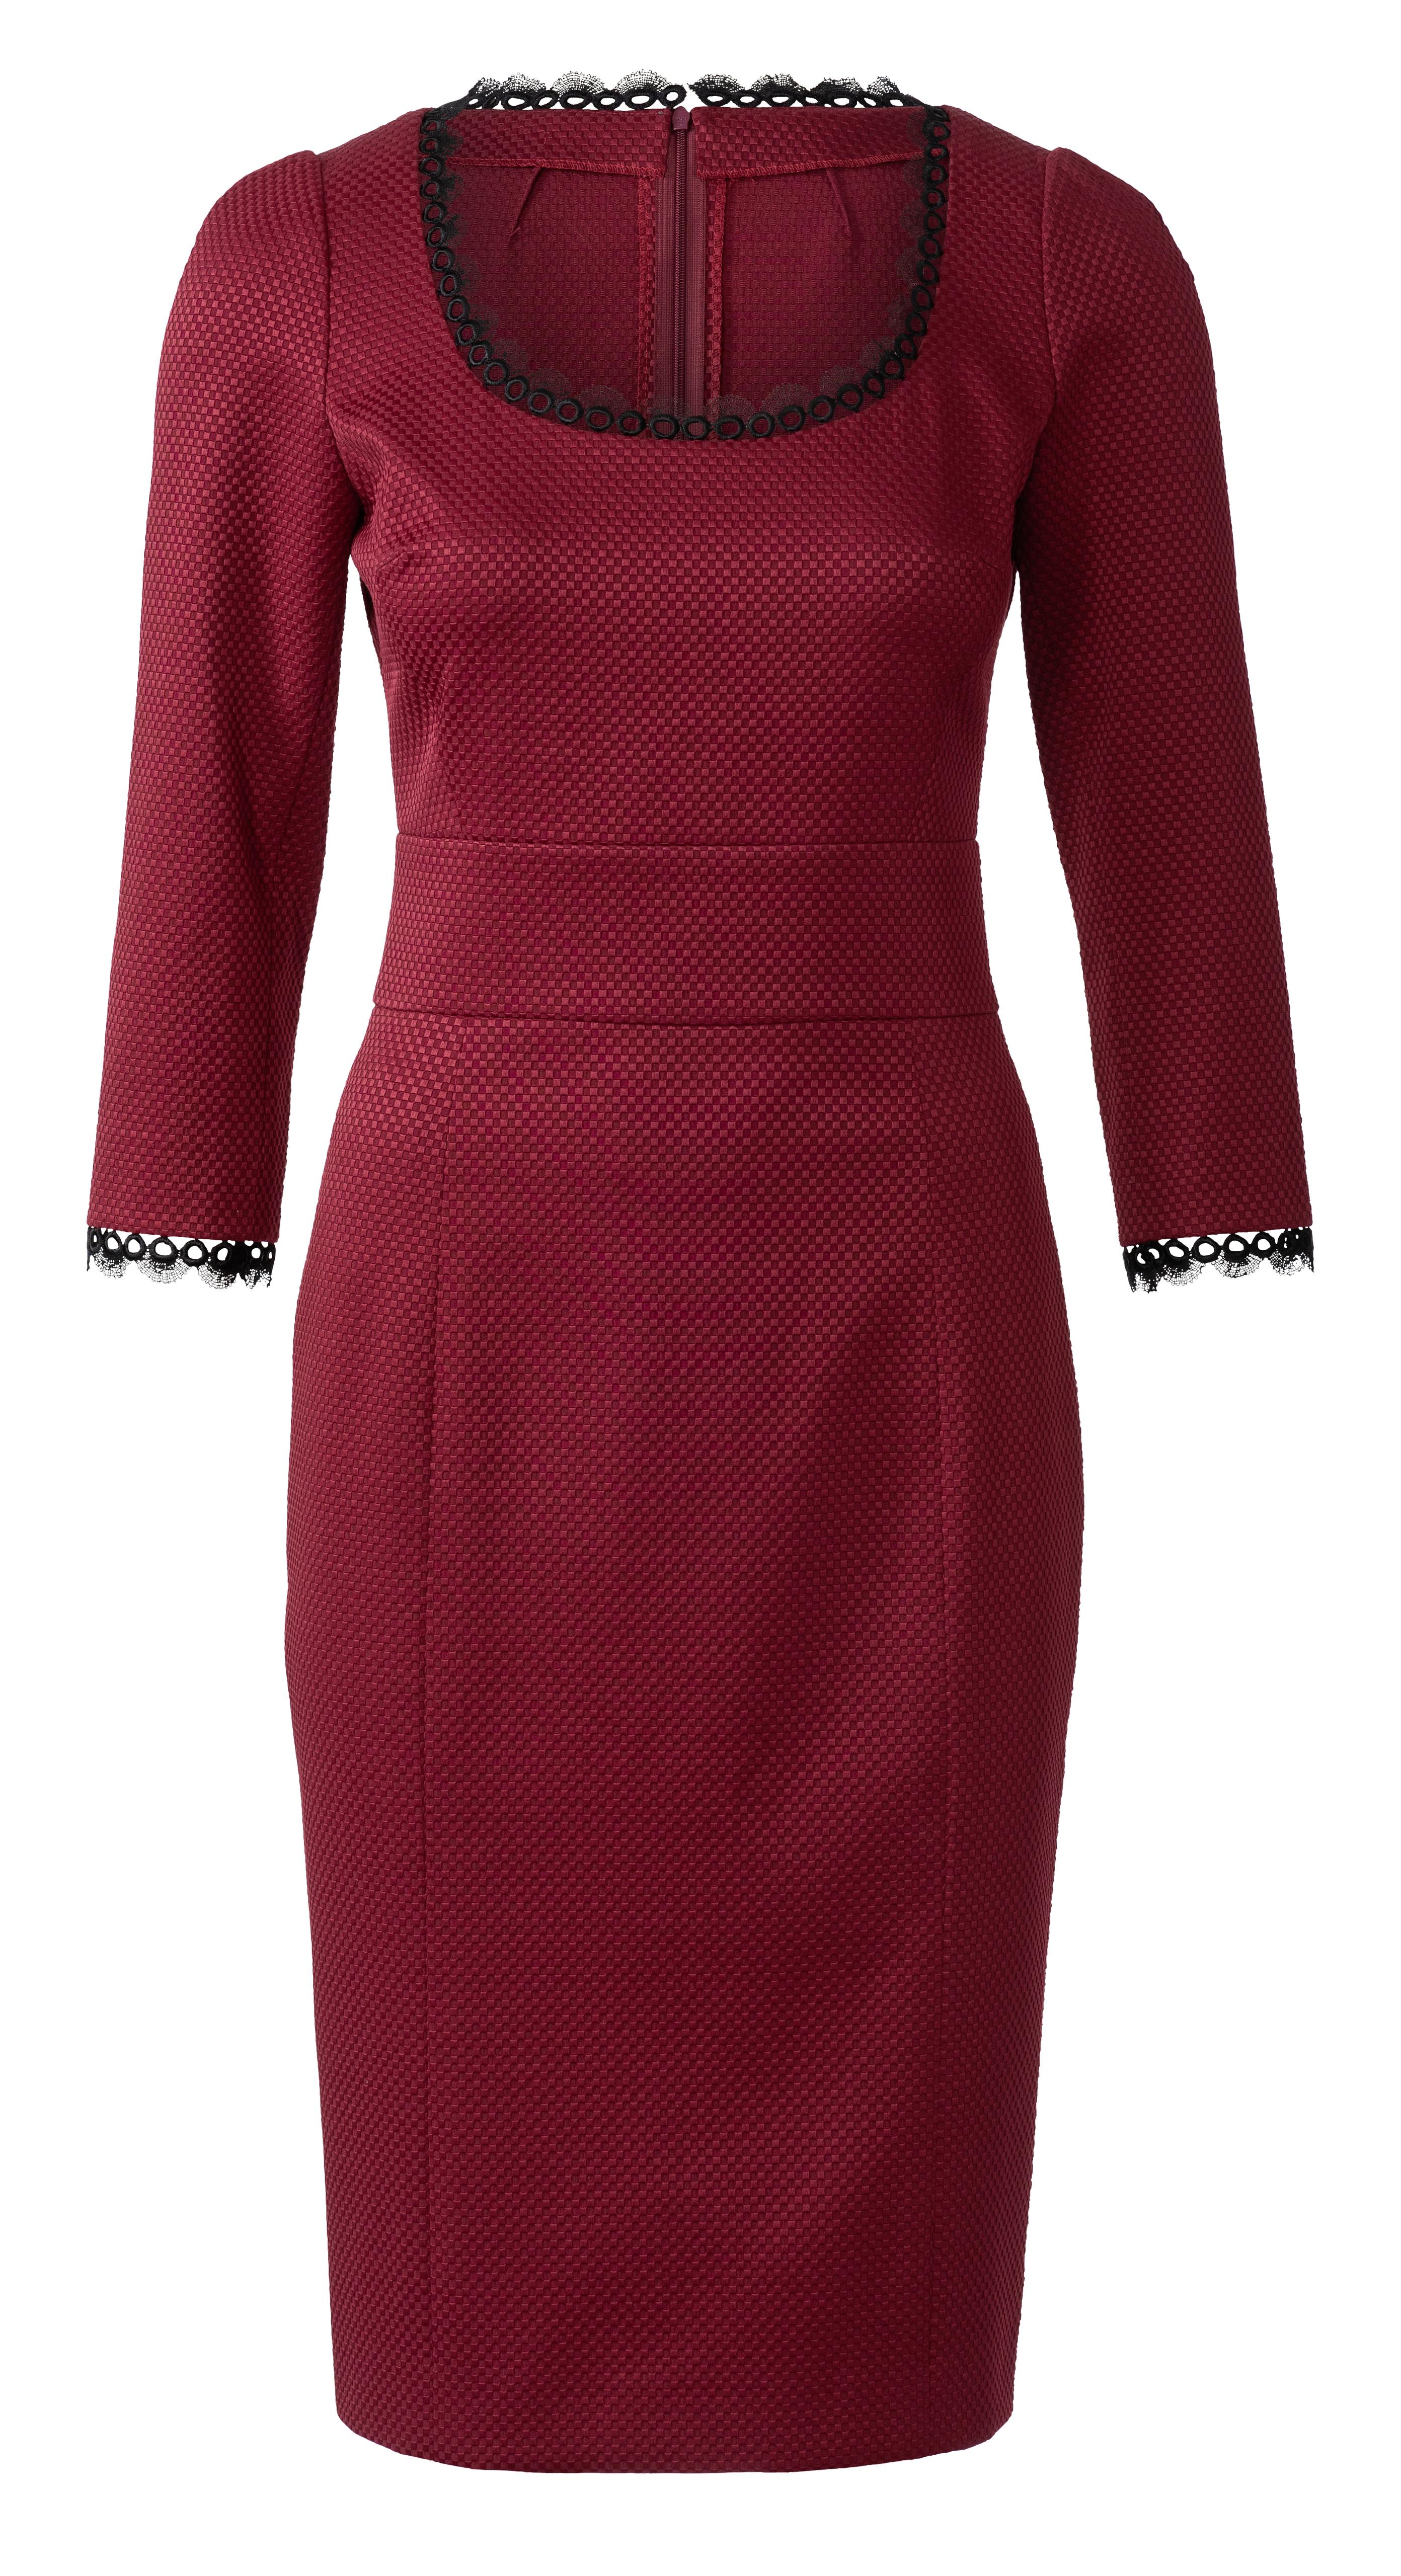 Burda B6223 Dress Sewing Pattern